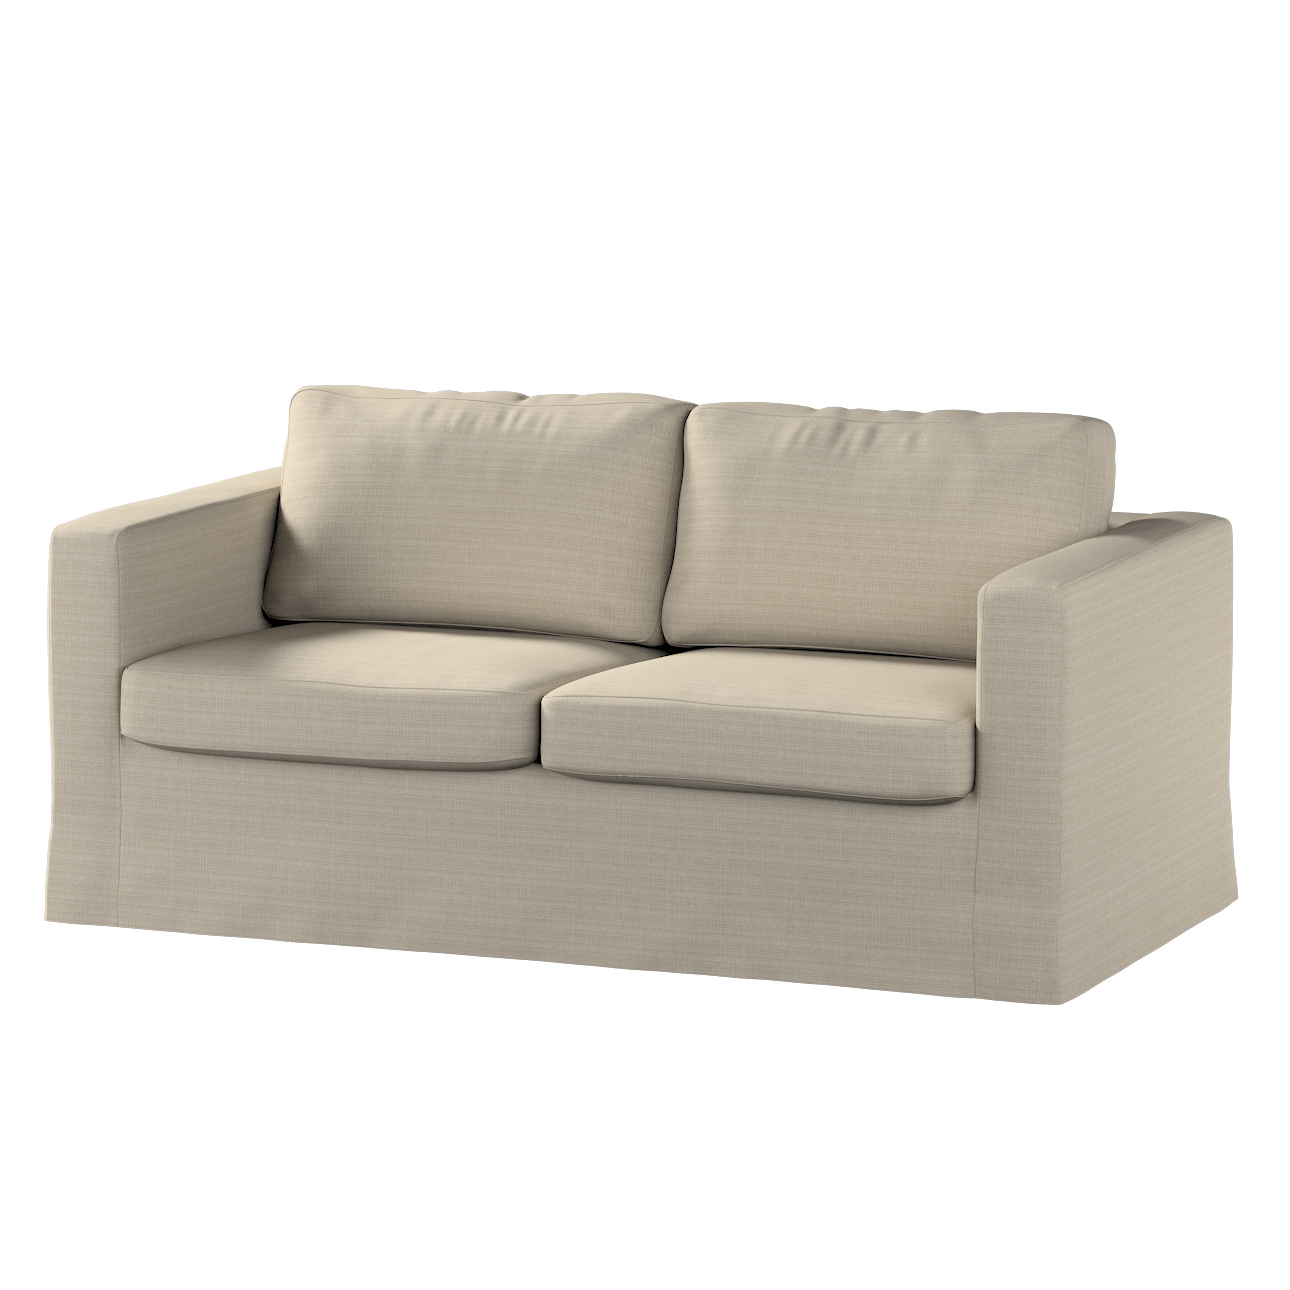 Bezug für Karlstad 2-Sitzer Sofa nicht ausklappbar, lang, beige, Sofahusse, günstig online kaufen